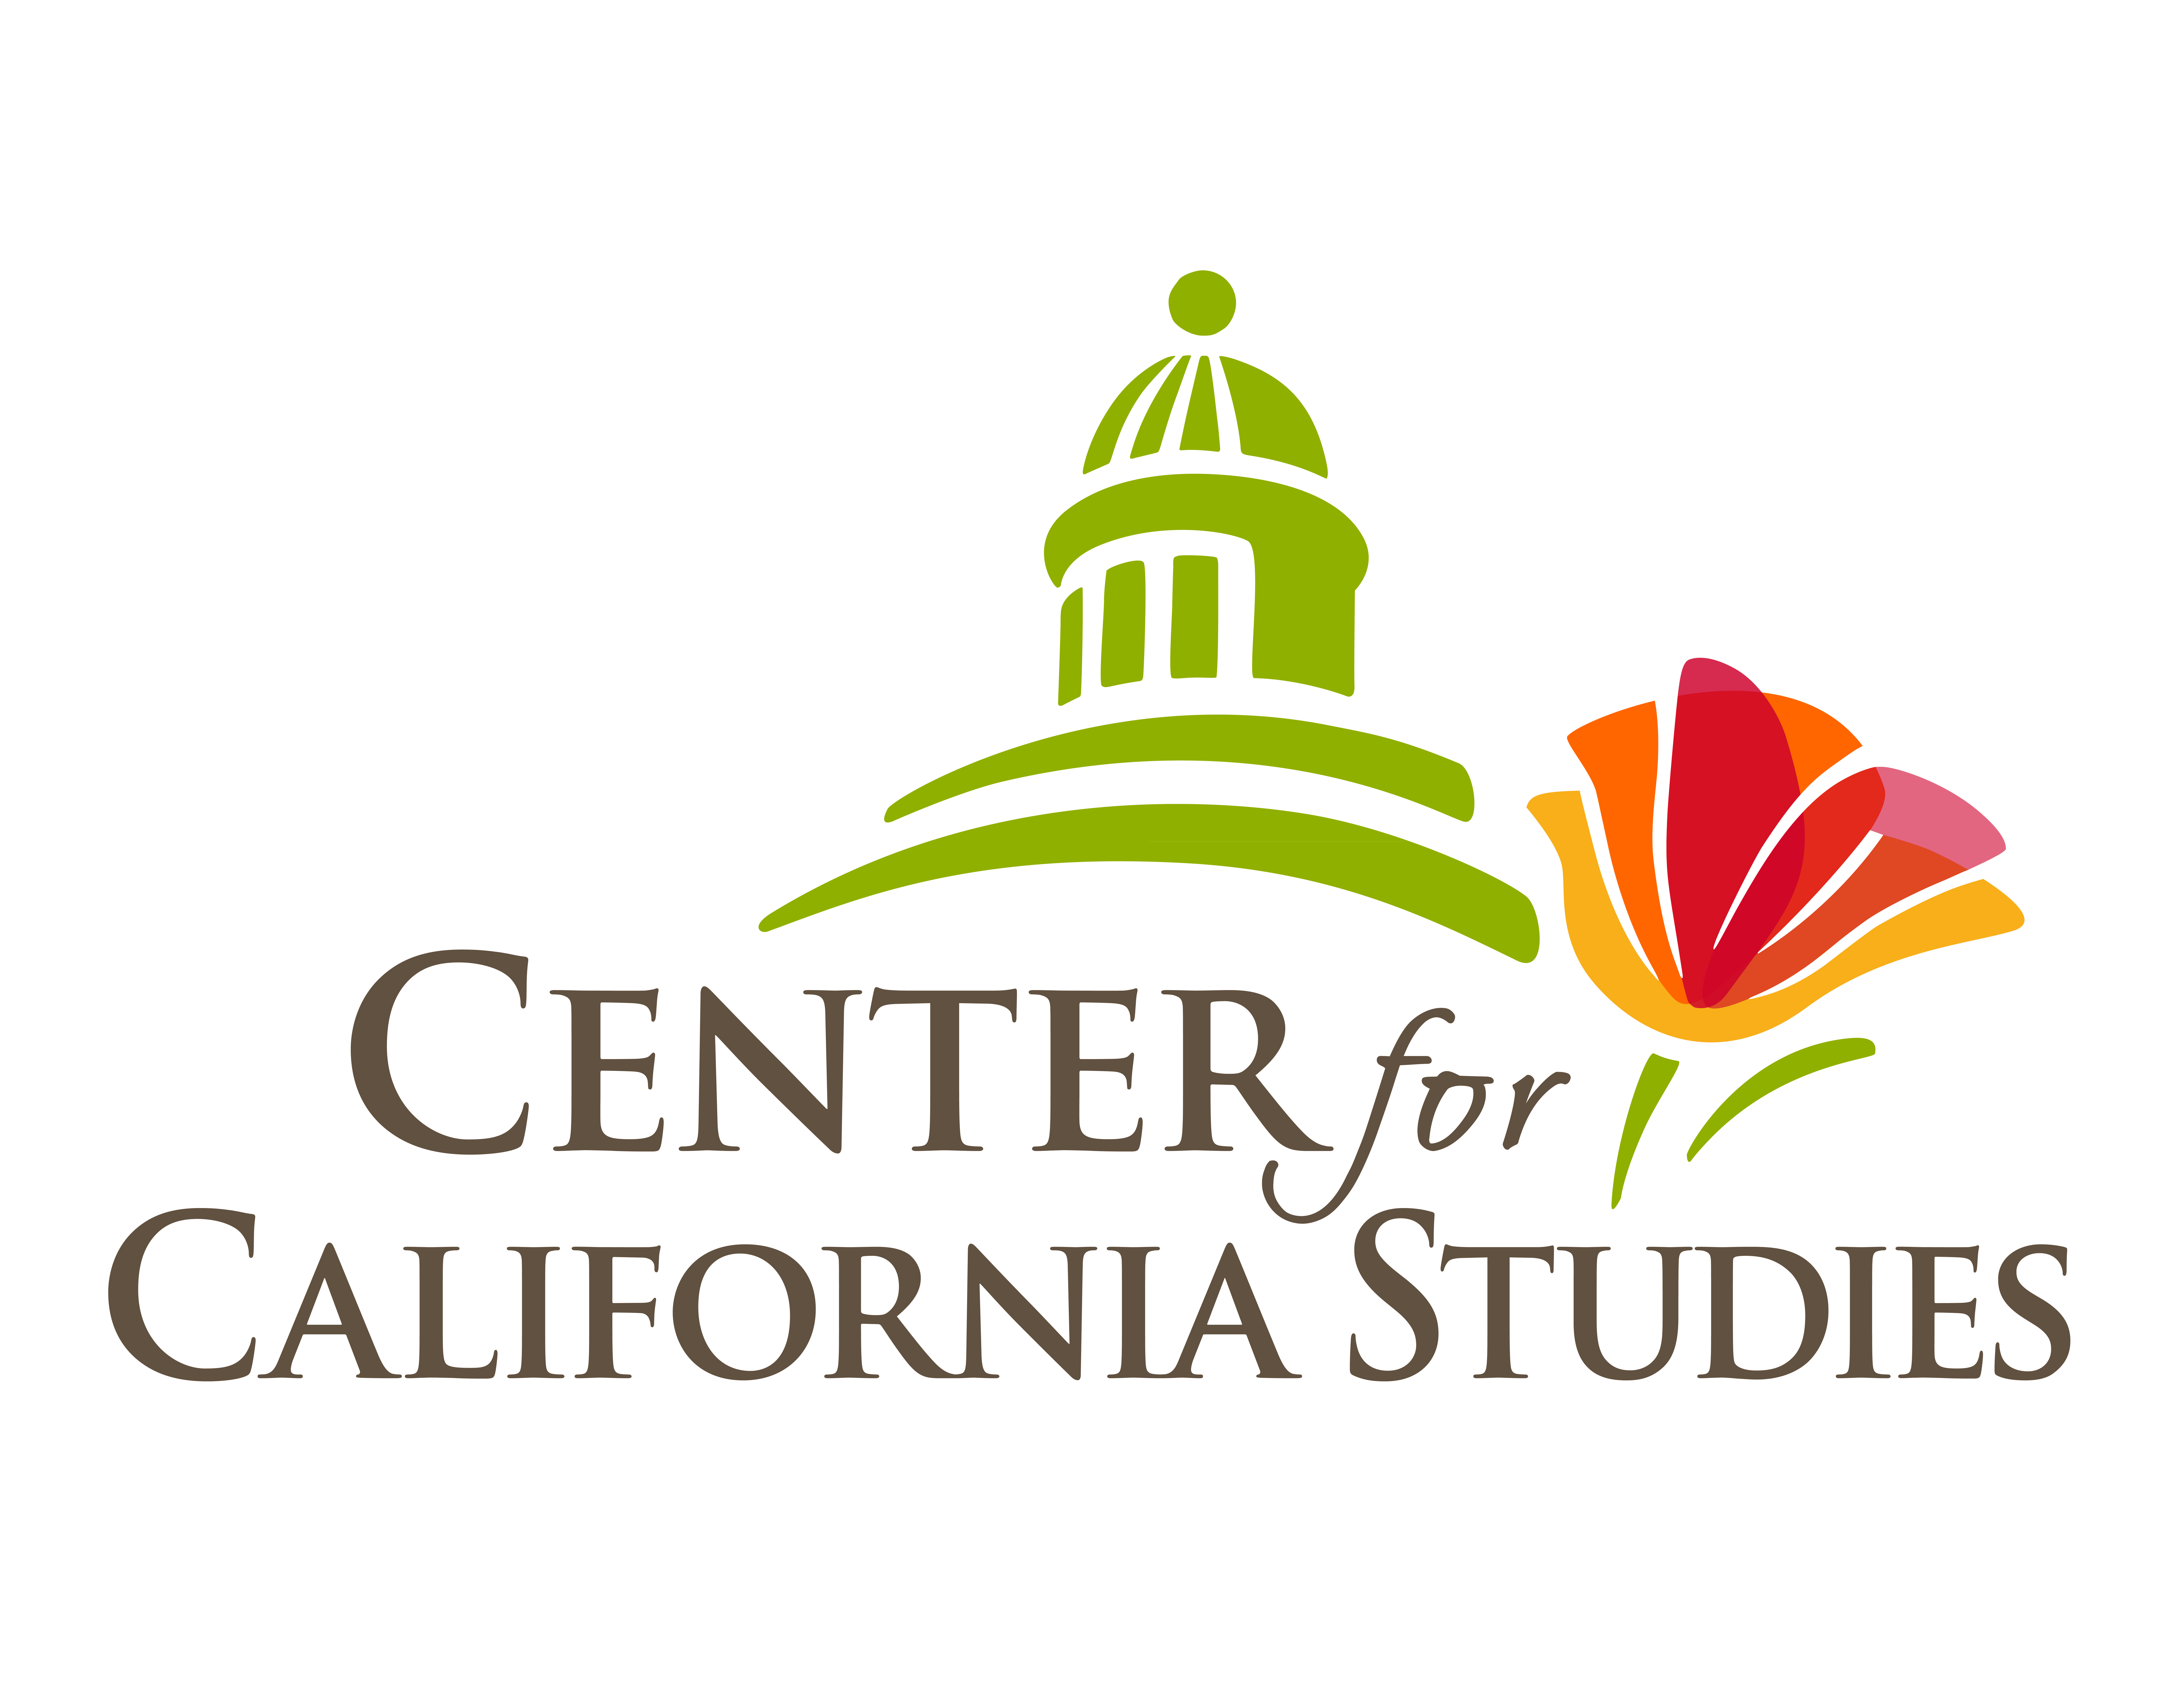 Center for California Studies logo